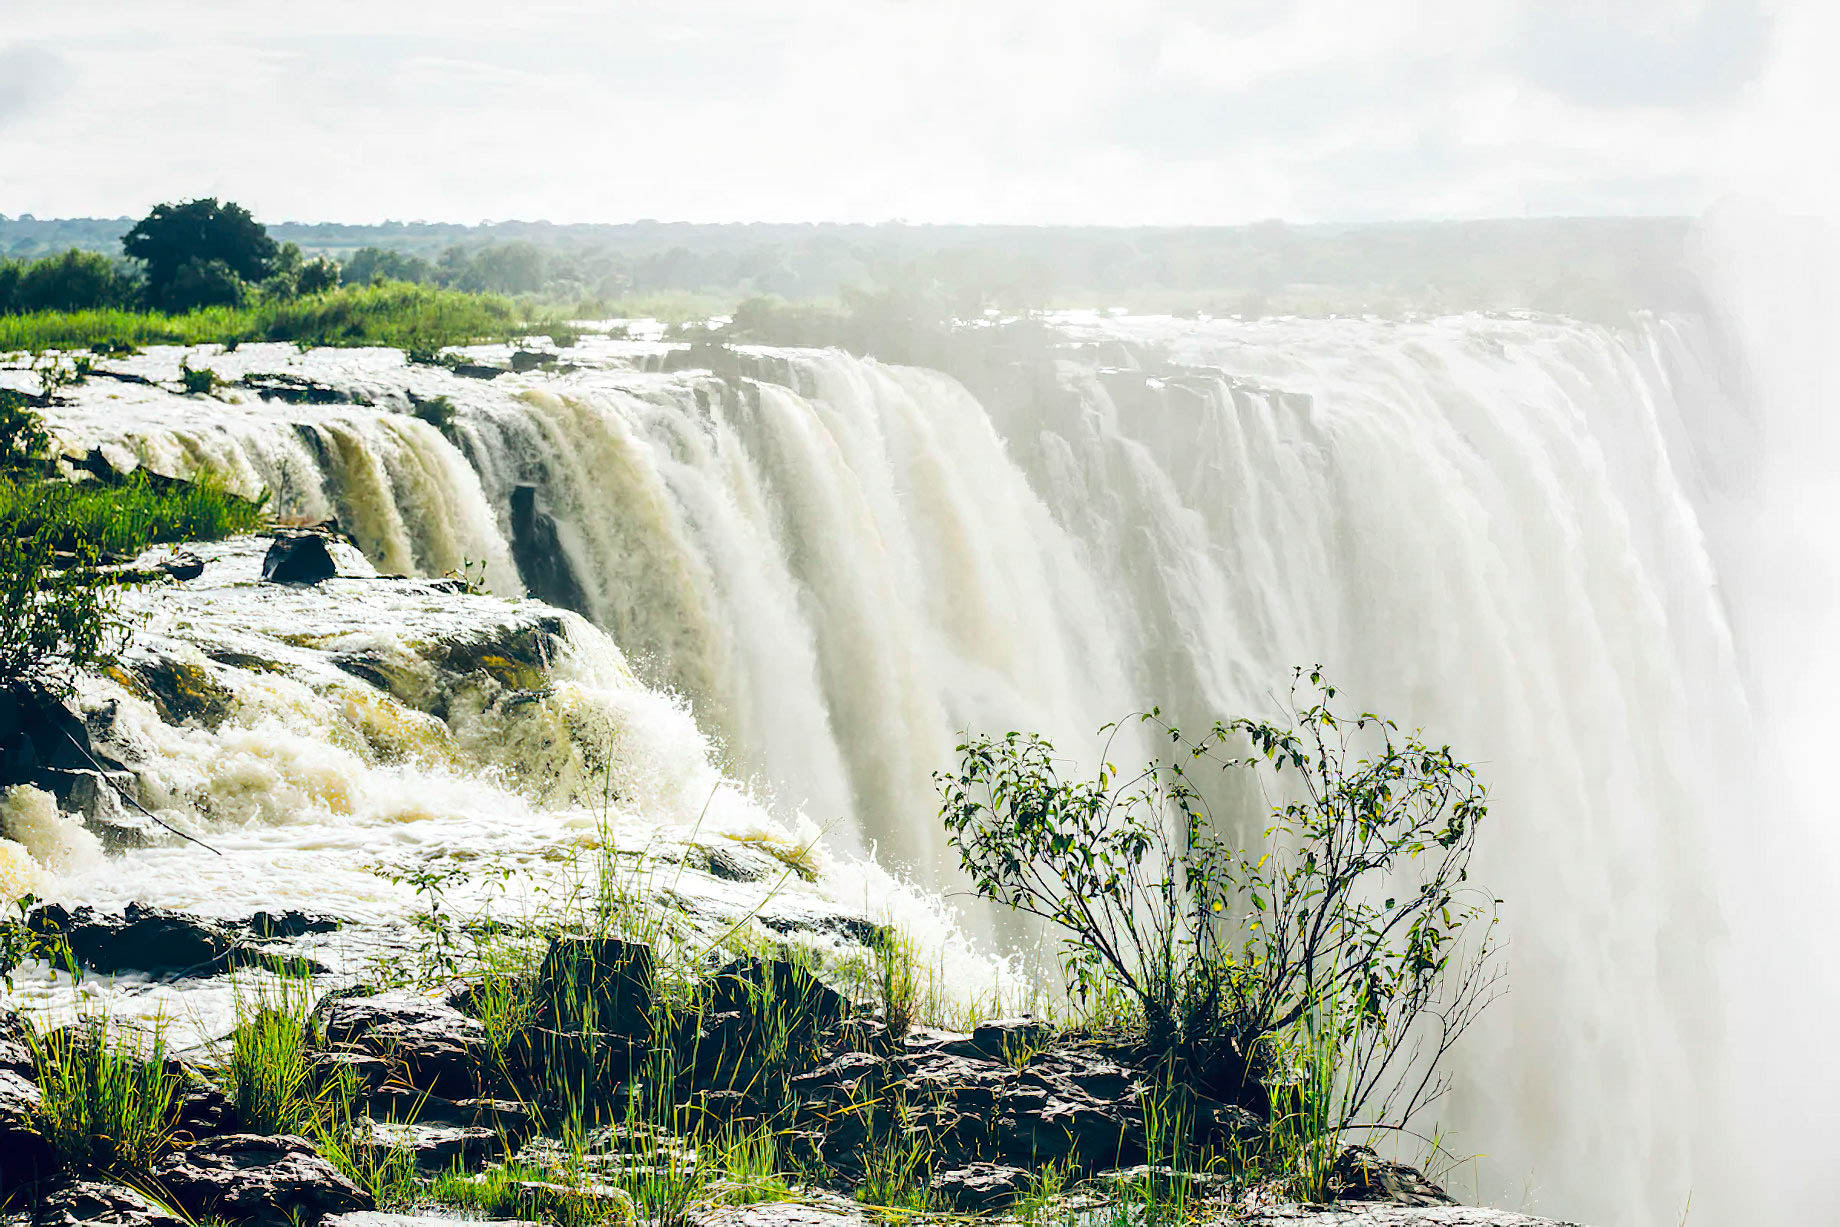 Avani Victoria Falls Resort – Livingstone, Zambia – Victoria Falls